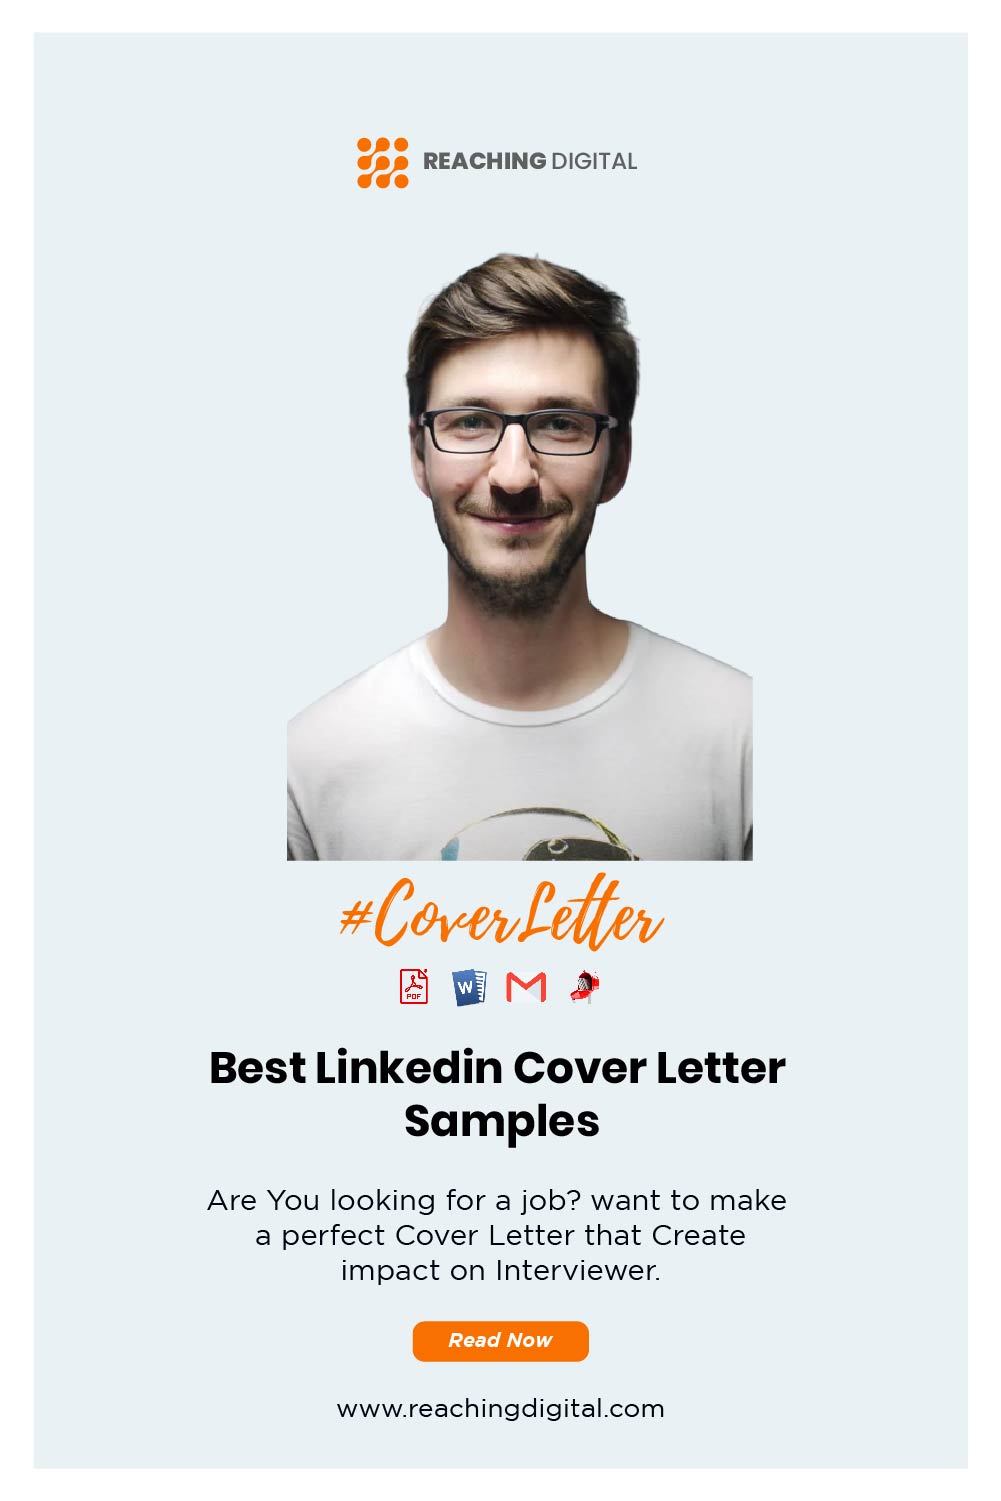 edit cover letter in linkedin